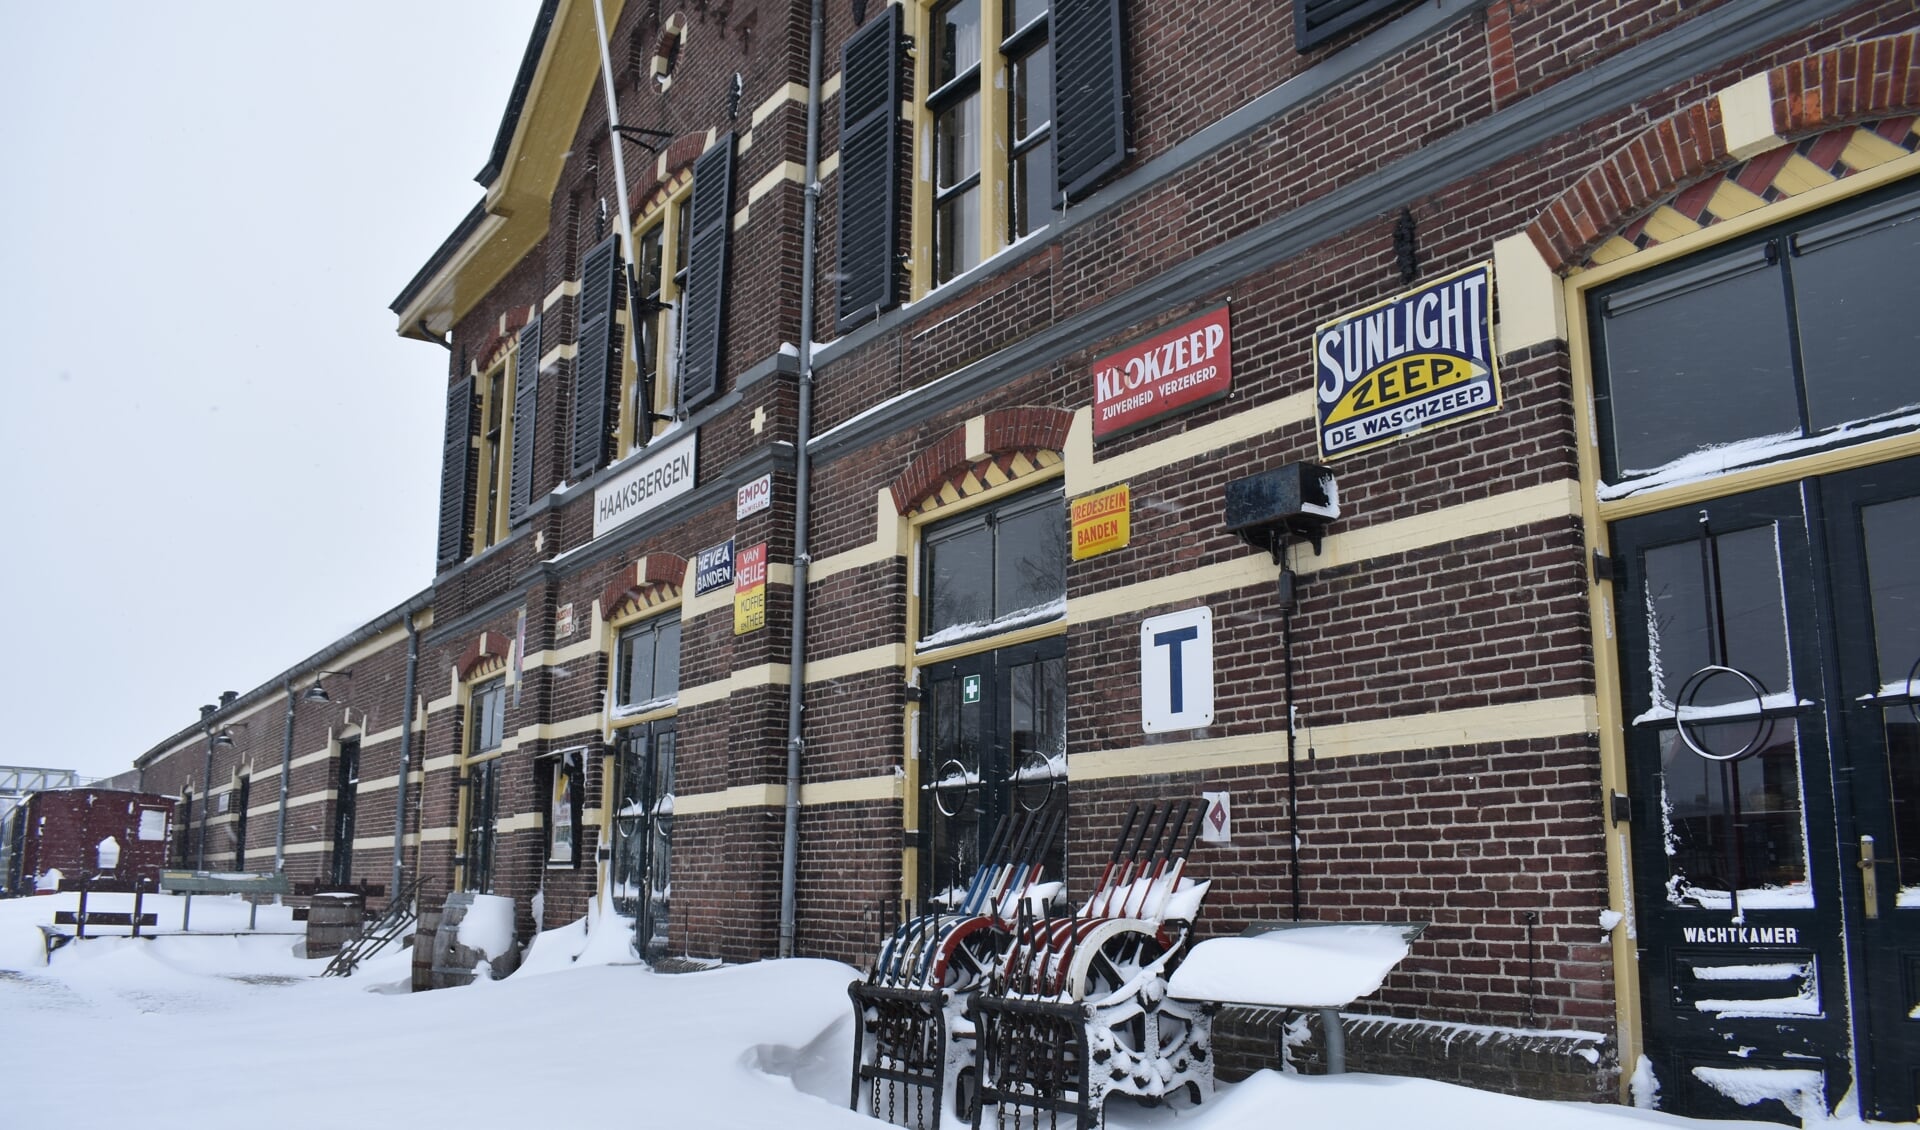 Station Haaksbergen in de sneeuw. Foto: PR